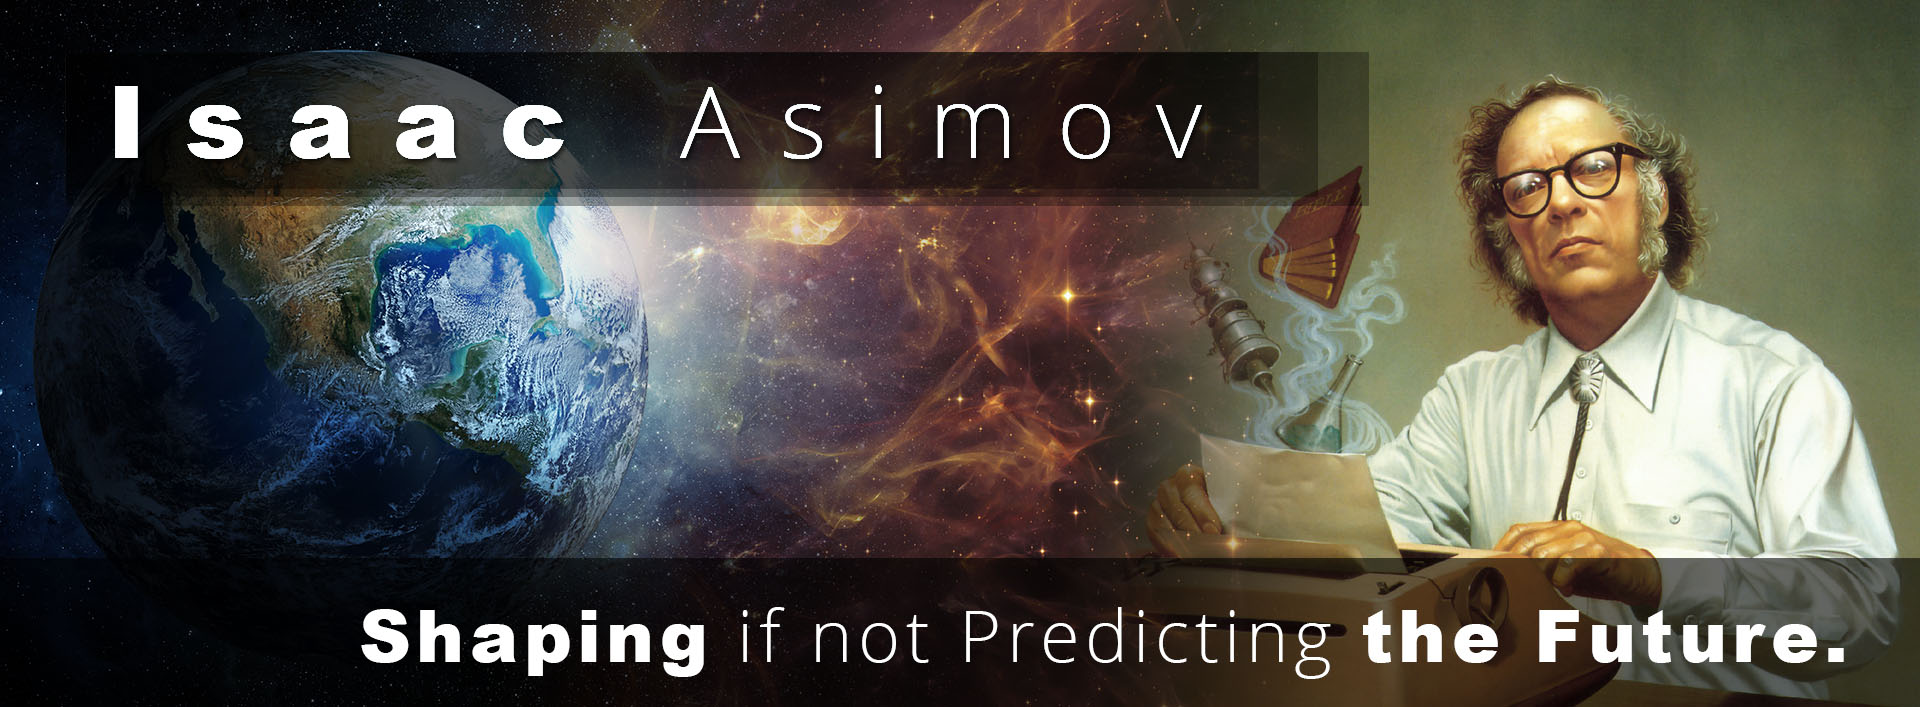 Isaac-Asimov__Shaping-if-not-Predicting-the-Future